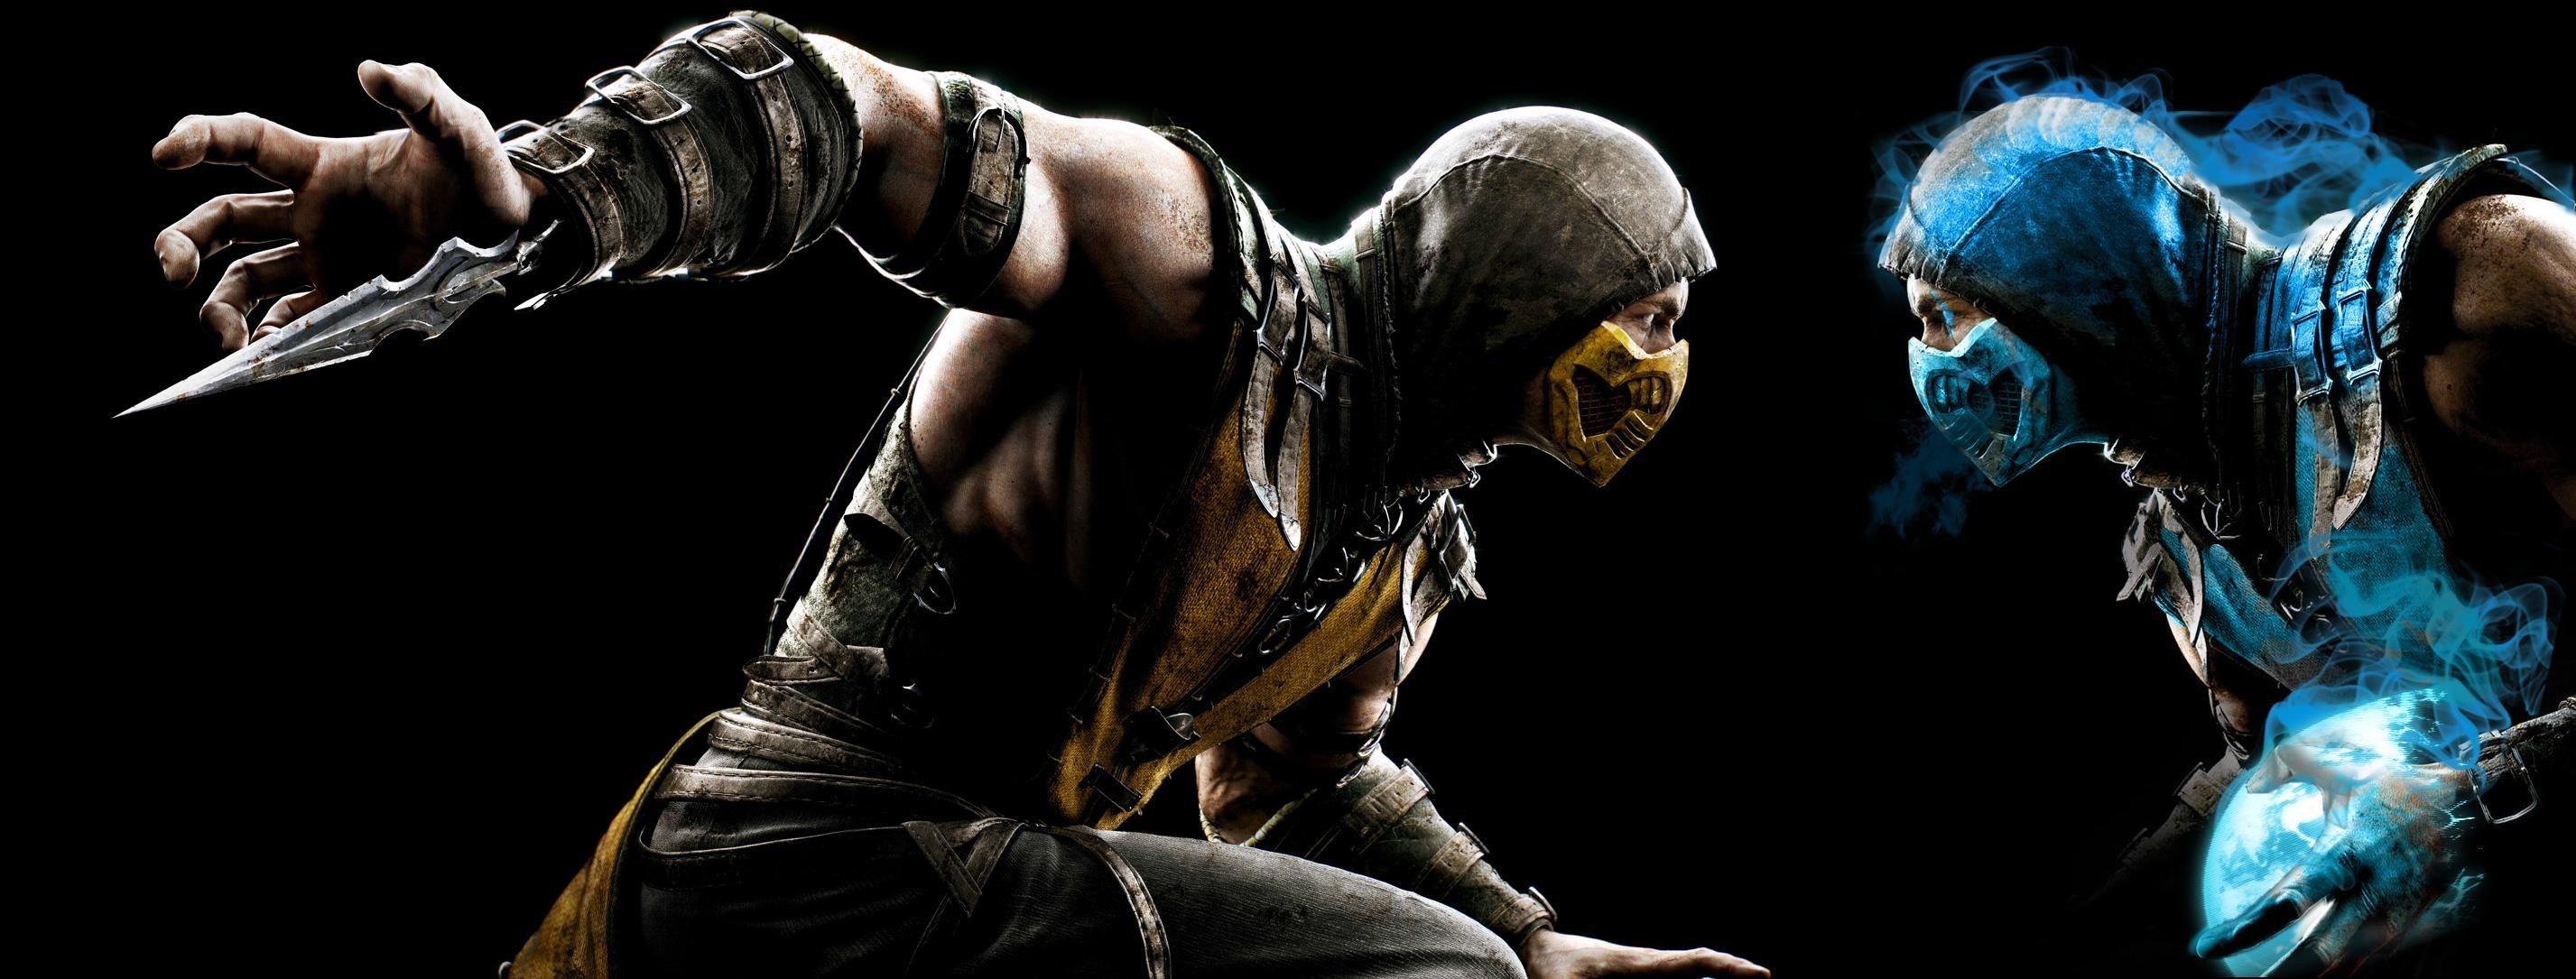 Mortal Kombat Scorpion Vs Sub Zero Wallpaper background picture